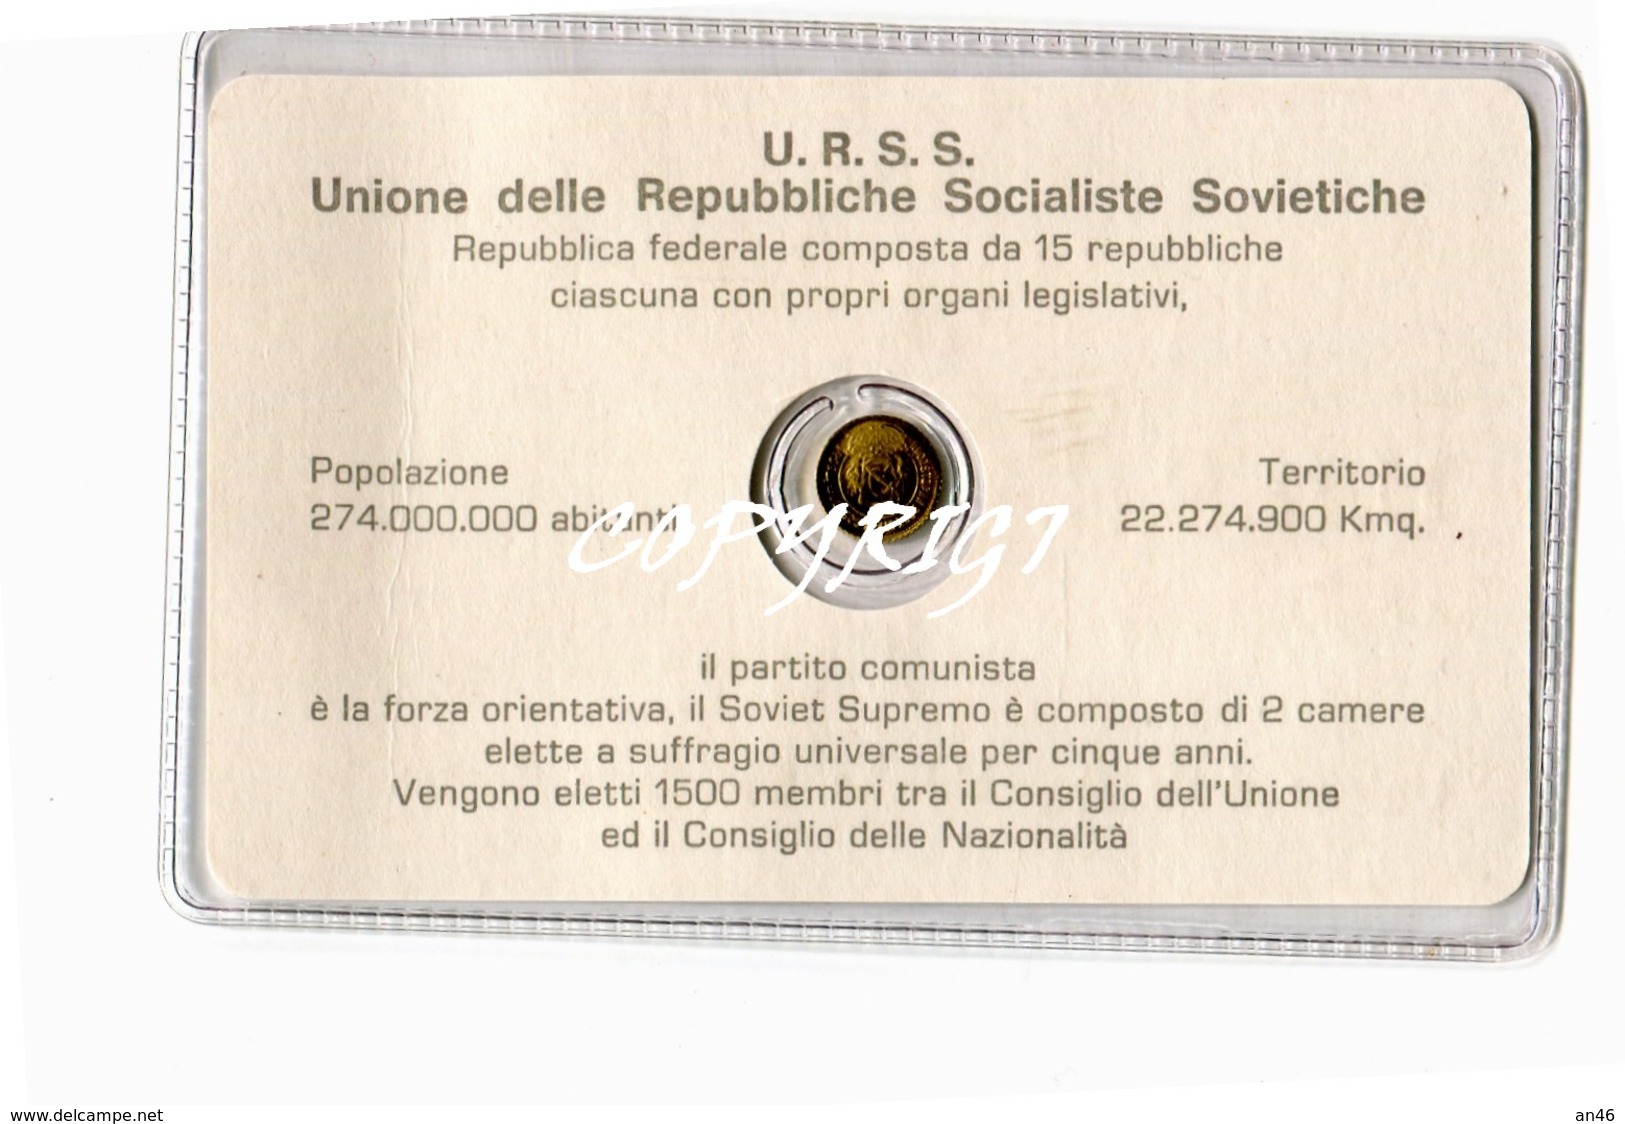 TESSERA_TESSERE_DOCUMENTO/I-"U.R.S.S.UNIONE DELLE REPUBBLICHE SOCIALISTE SOVIET"CONTIENE L'EFFIGIE IN UNA MONETINA D'ORO - Collections